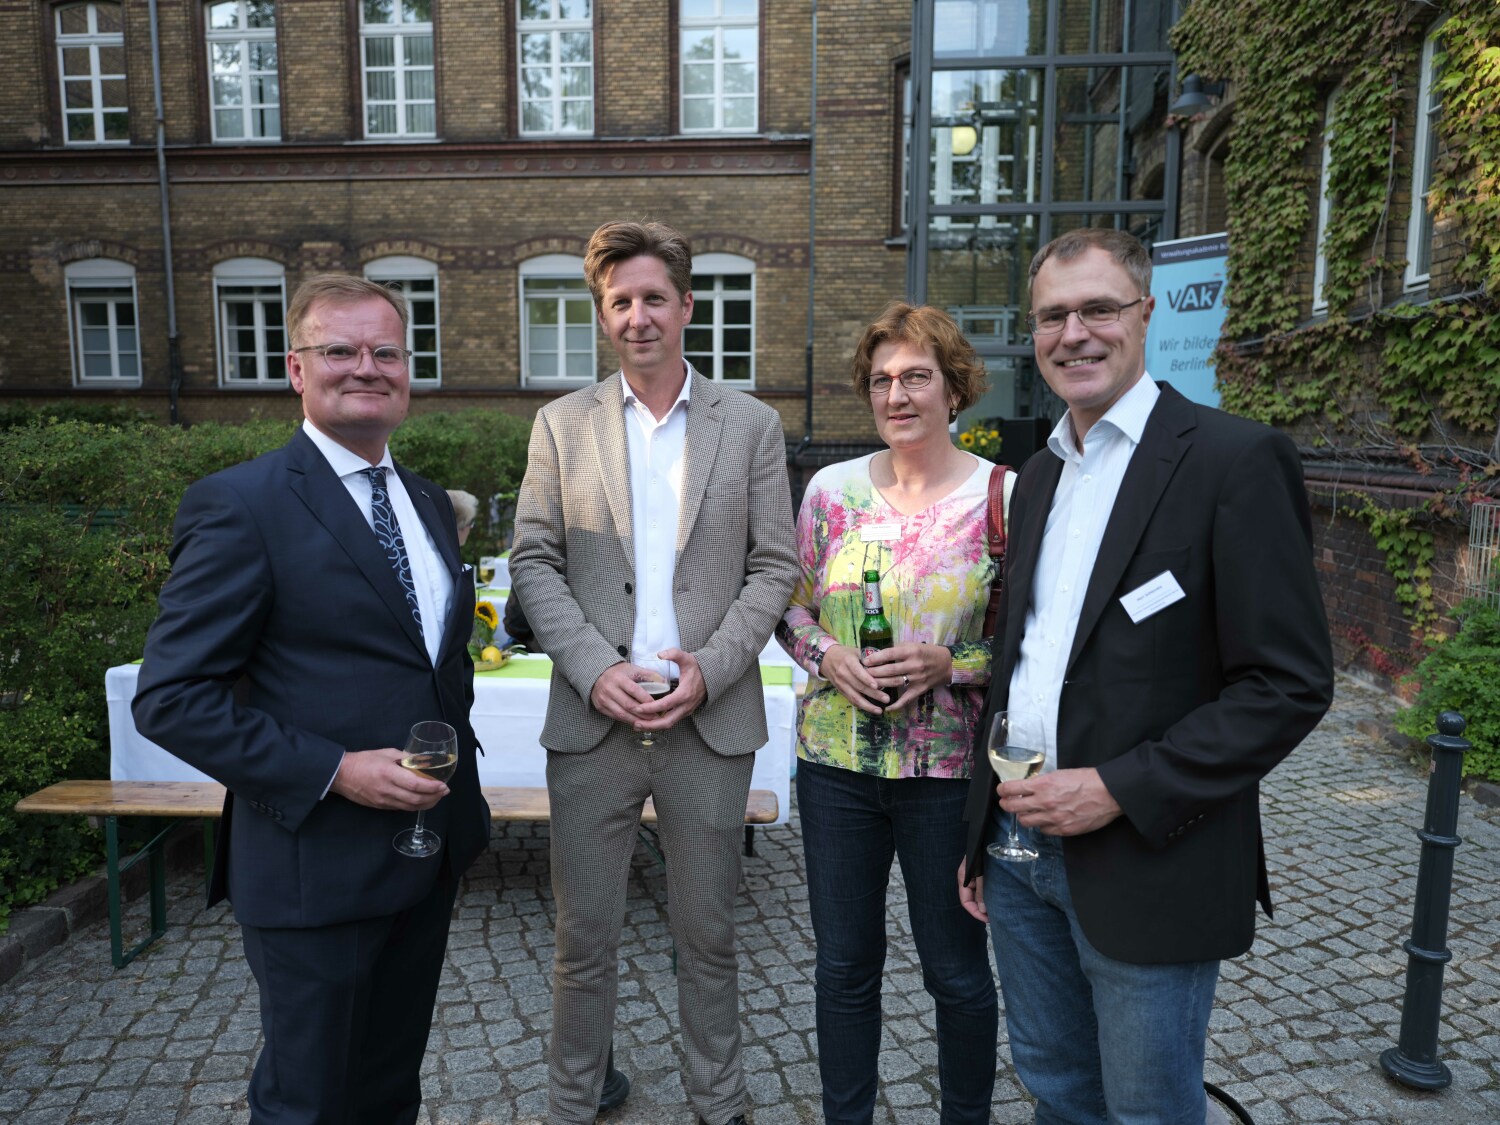 Wolfgang Schyrocki, Direktor der VAk, Daniel Wesener, Finanzsenator, Daniela Ortmann, Vorsitzende des Hauptpersonalrates, Matthias Schlenzka, DGB (von links nach rechts)